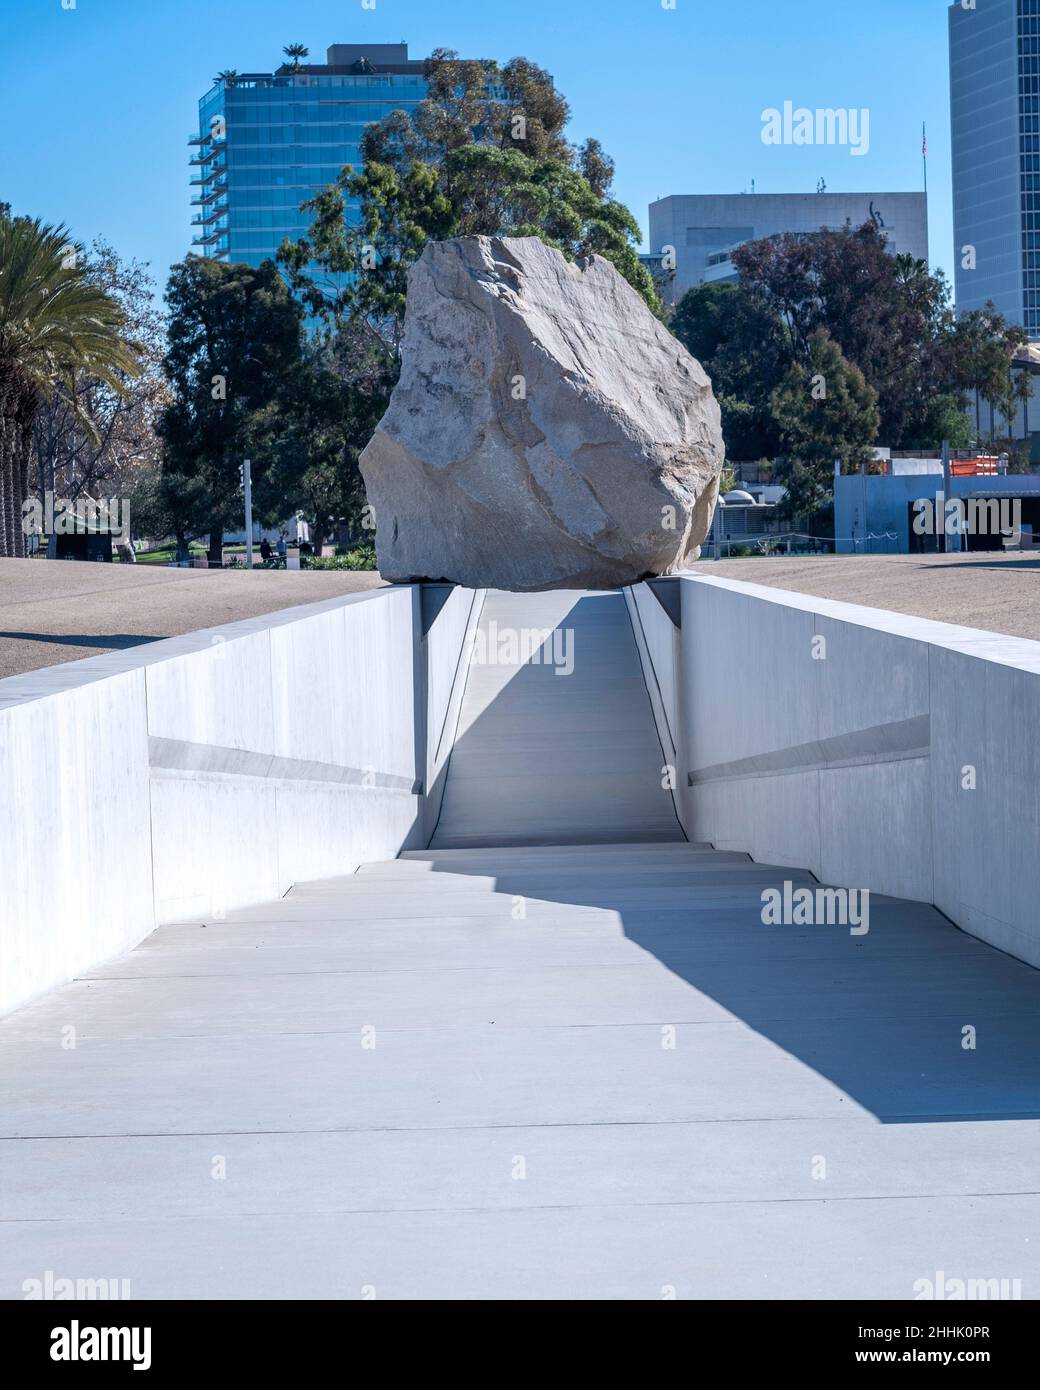 Los Angeles, CA, USA - le 26 janvier 2022 : la sculpture d'art public « Messe lévitée » de l'artiste Michael Heizer est exposée au LACMA à Los Angeles, CA. Banque D'Images